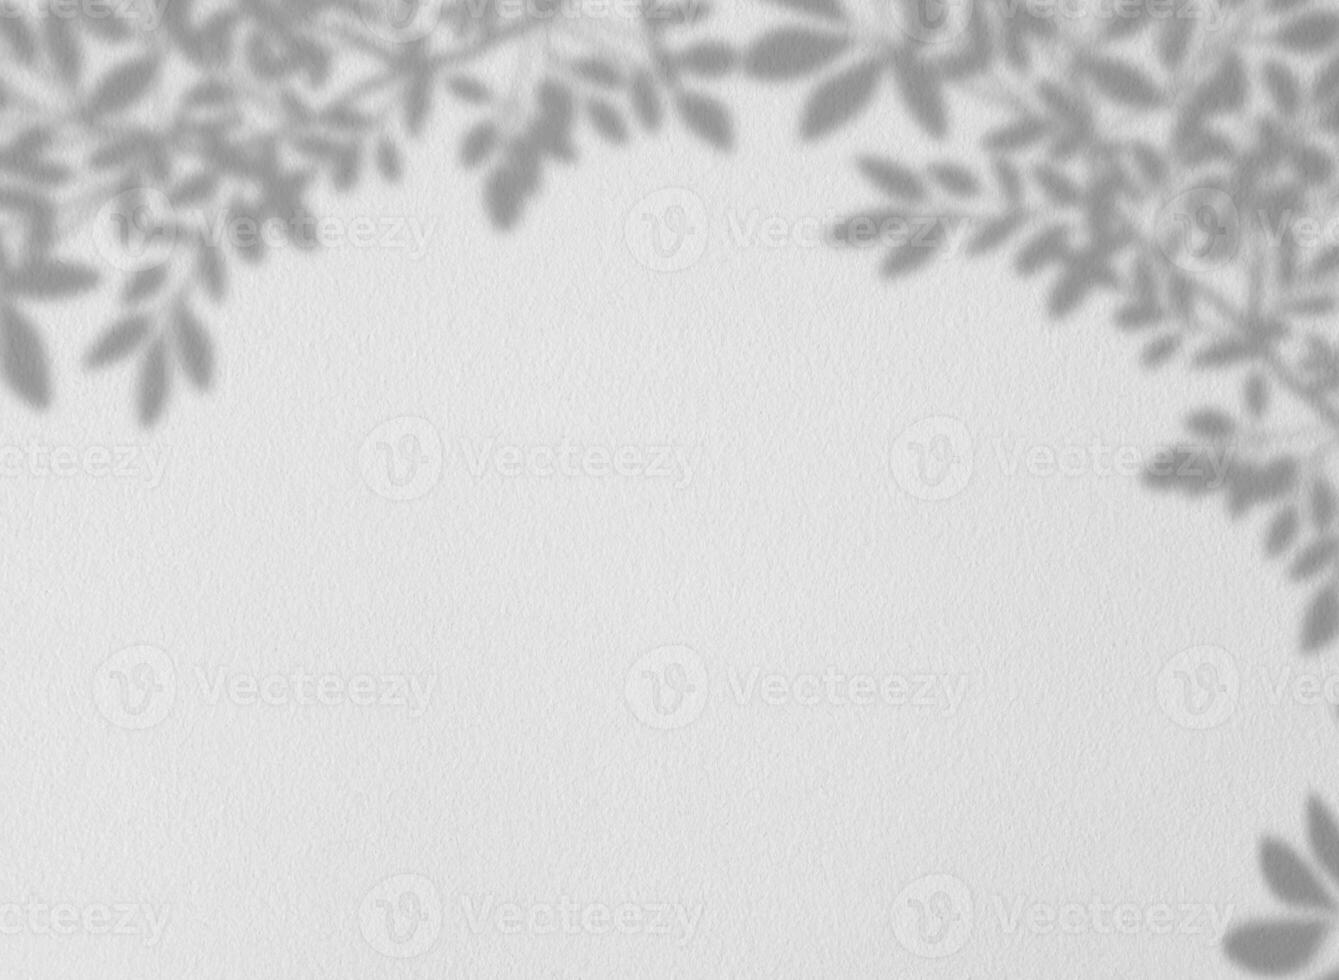 feuilles ombre recouvrir sur gris ciment mur texture arrière-plan, vide blanc studio arrière-plan avec tropical branches feuilles sur béton surface sol, toile de fond afficher pour produit présentation photo